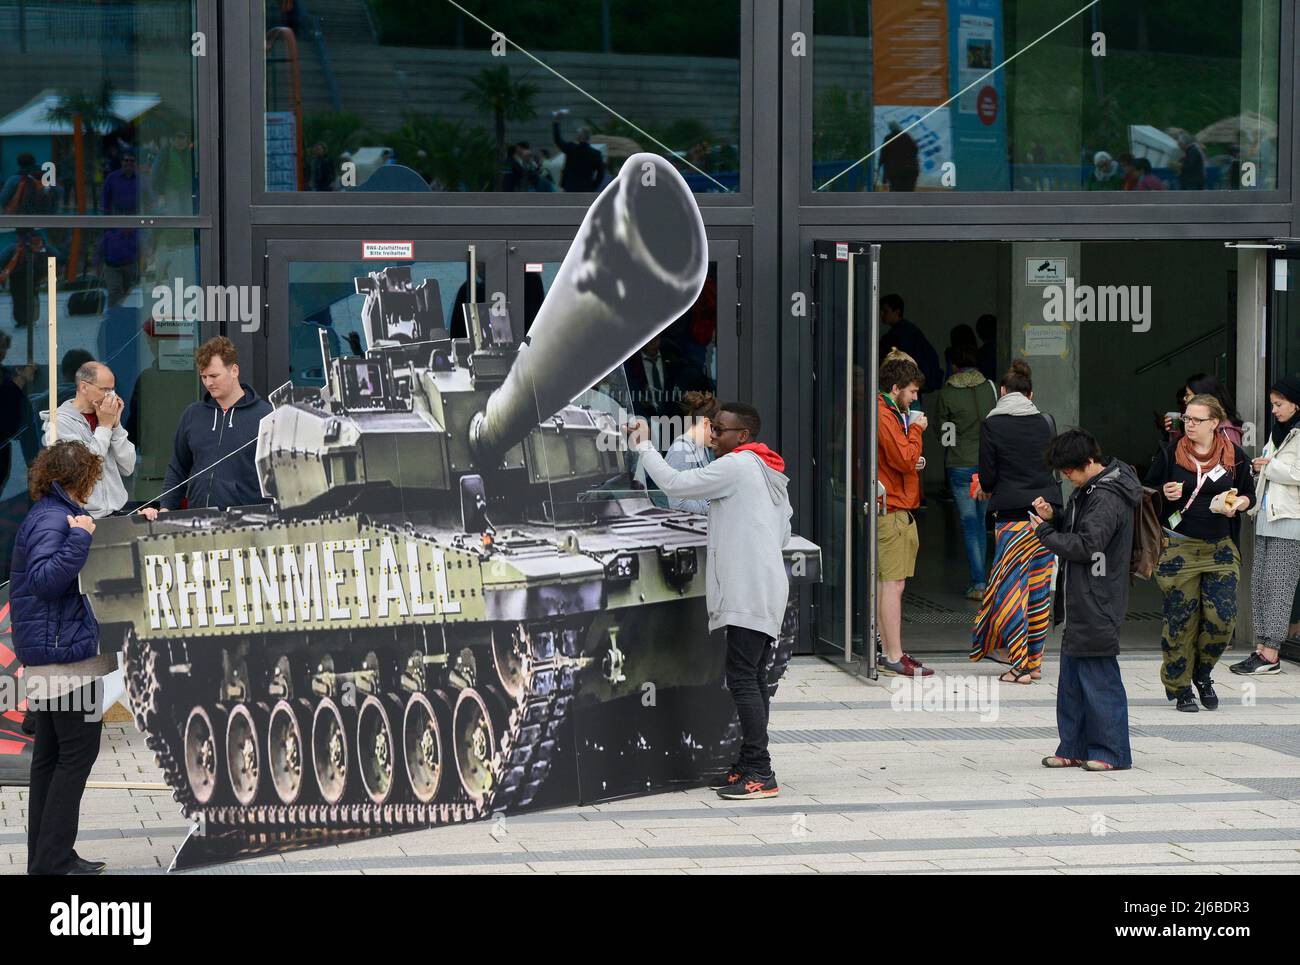 Alemania, Berlín, protesta de la ONG Campact contra el comercio de armas, modelo de globo de la empresa alemana de denfense Rheinmetall Leopard 2 tanque de batalla Foto de stock